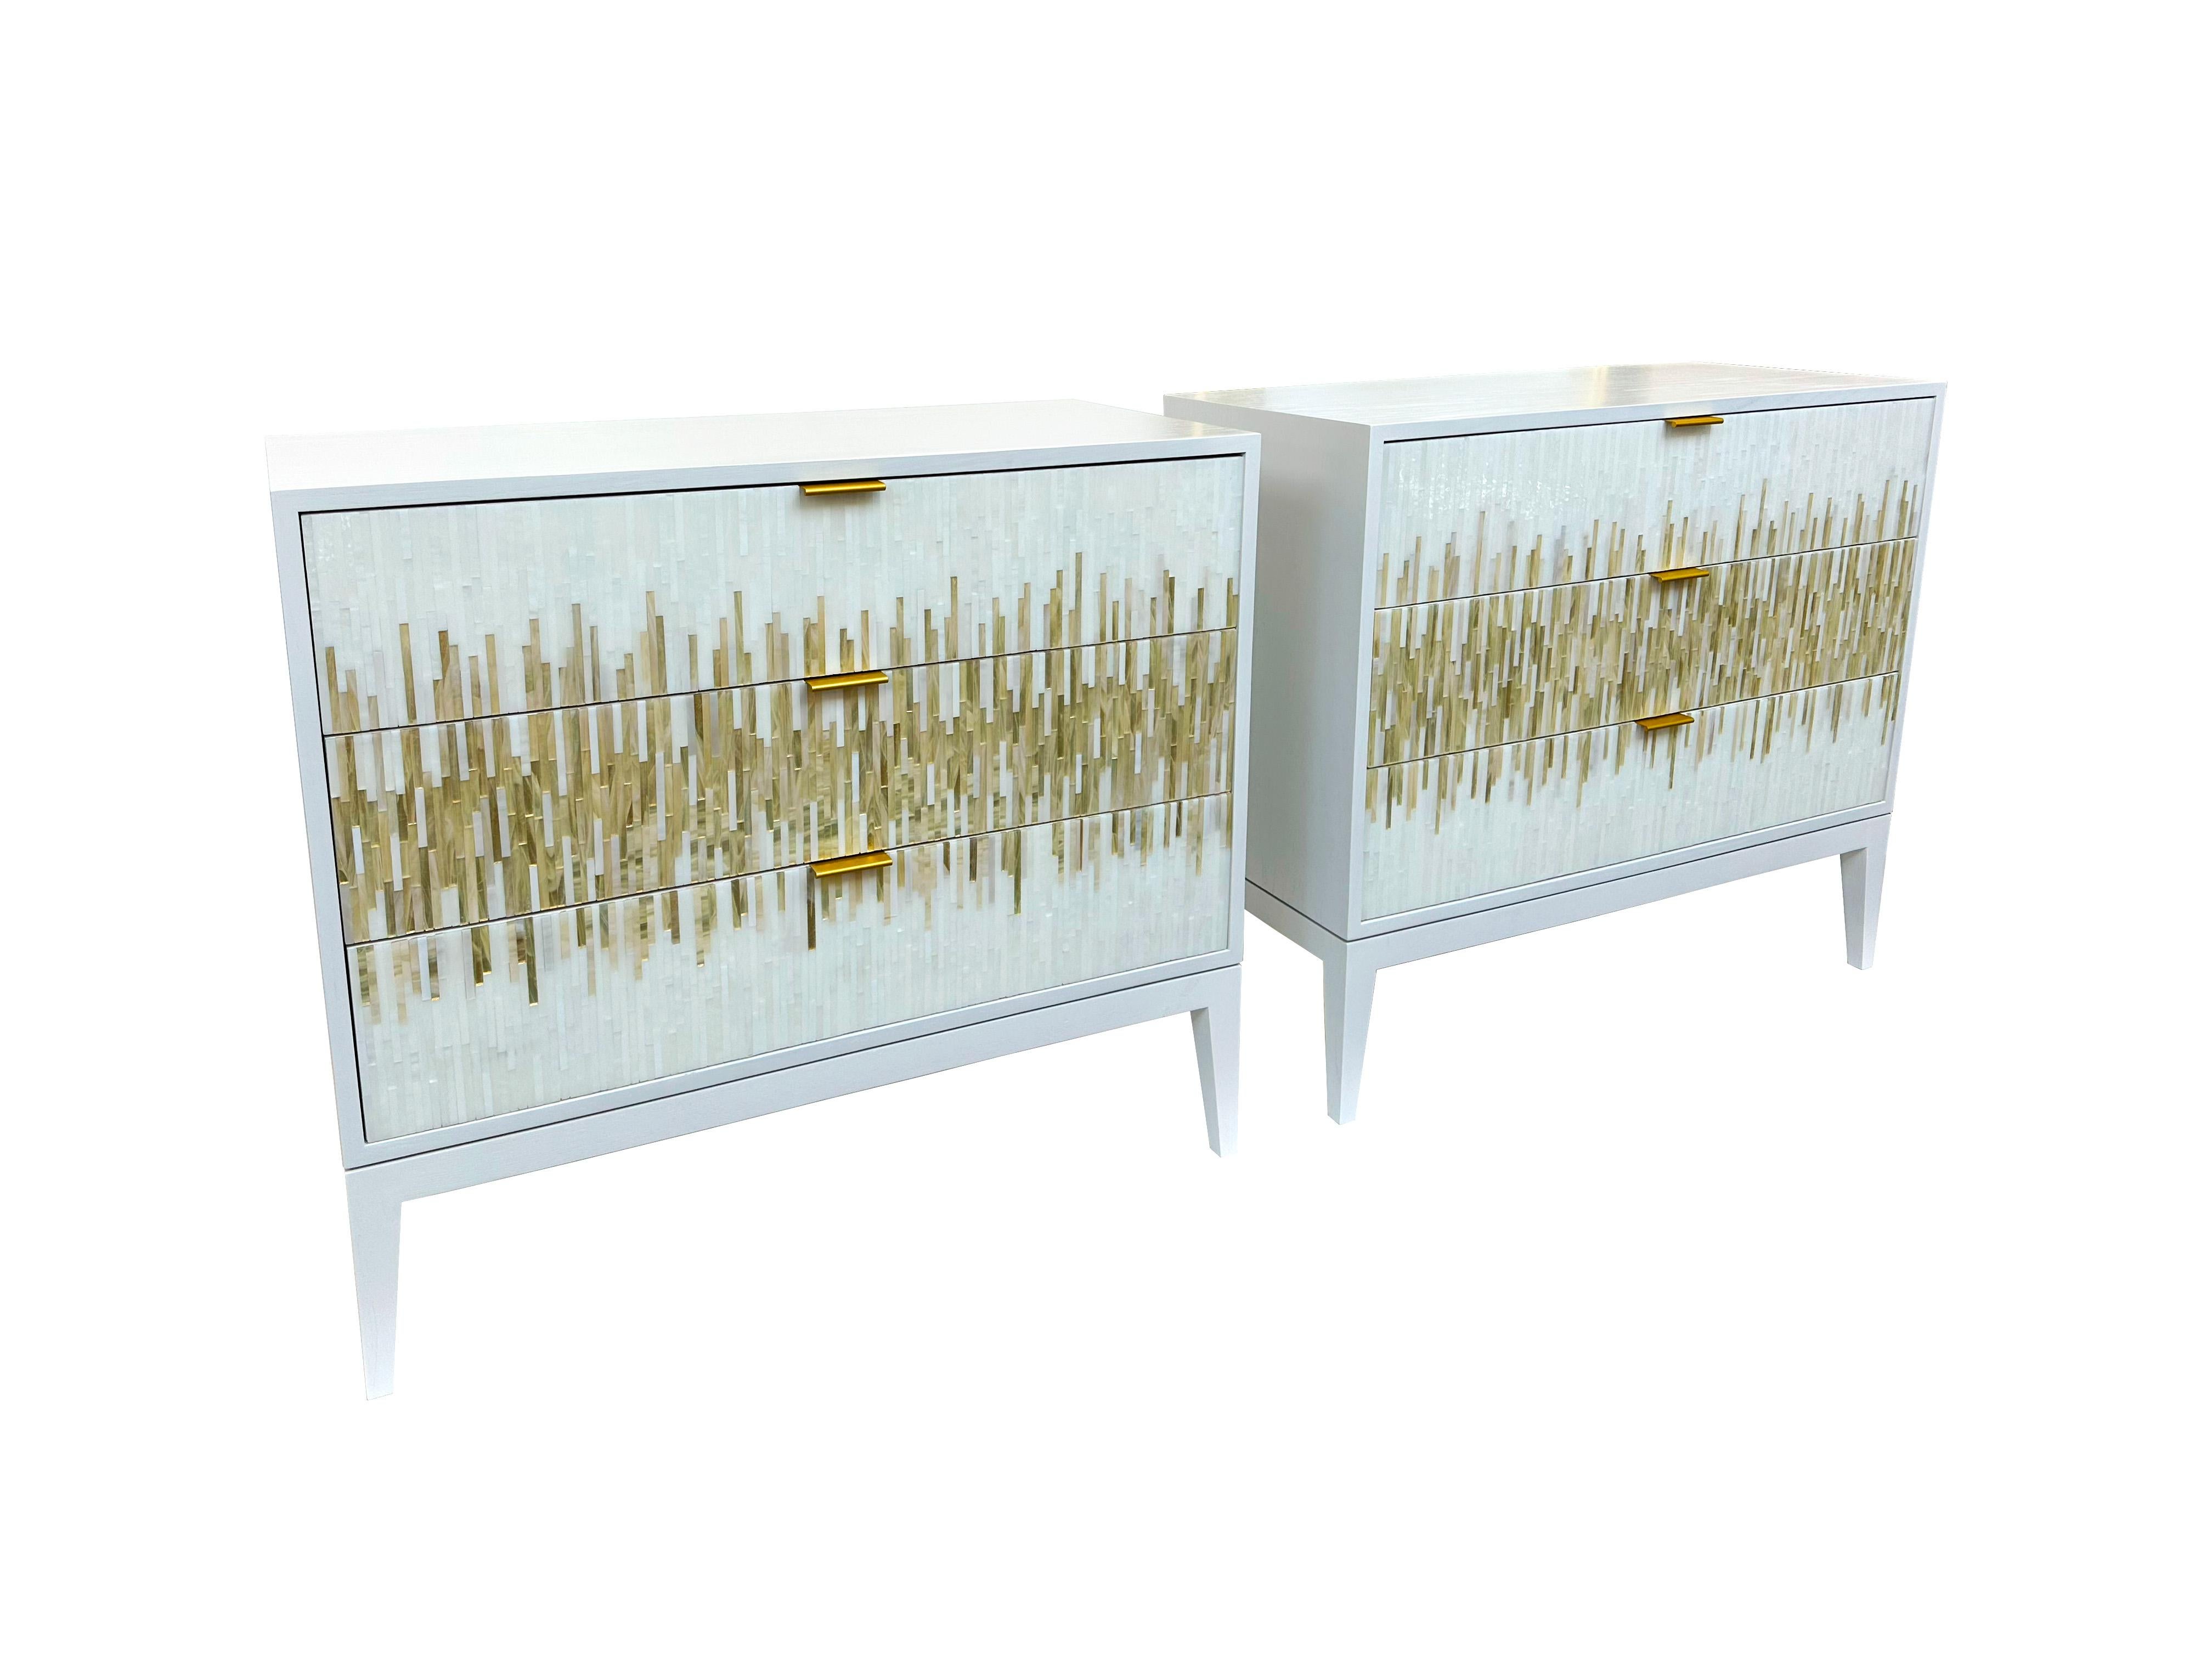 Der Milano Gold 2-Schubladen-Nachttisch ist der ultimative Ausdruck von modernem Luxus und Raffinesse. Dieses exquisite, mit viel Liebe zum Detail handgefertigte Möbelstück verfügt über elegante Milano-Holzbeine, die jedem Schlafzimmer einen Hauch